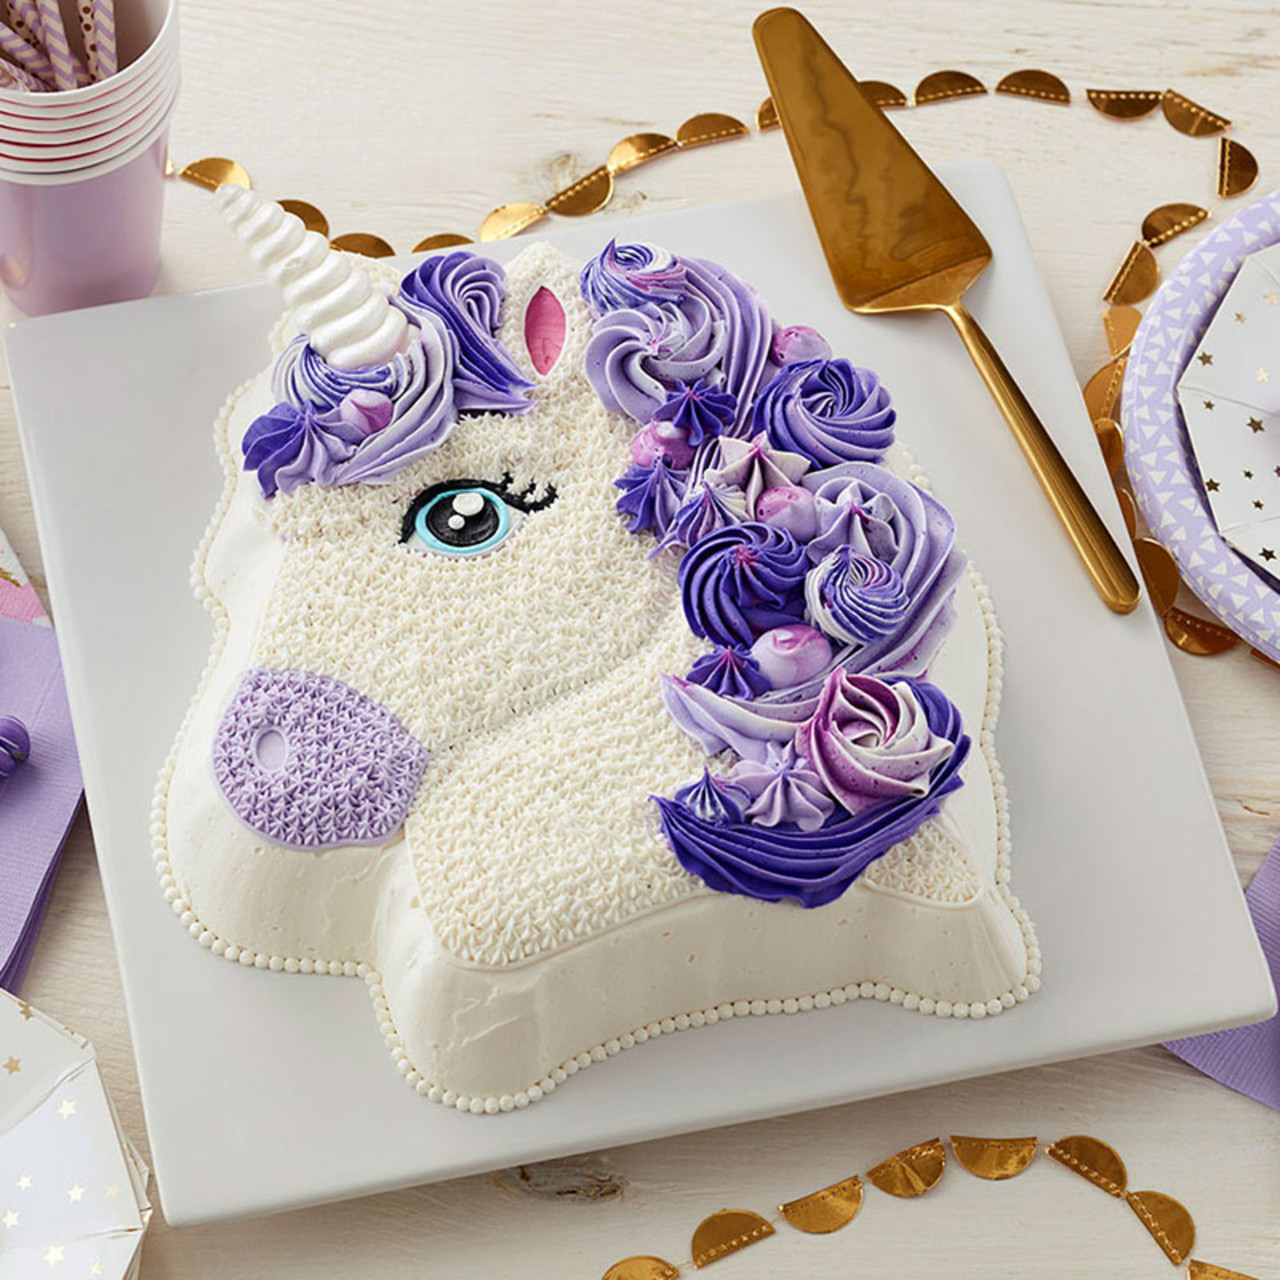 Pretty in Purple Unicorn Cake - Wilton